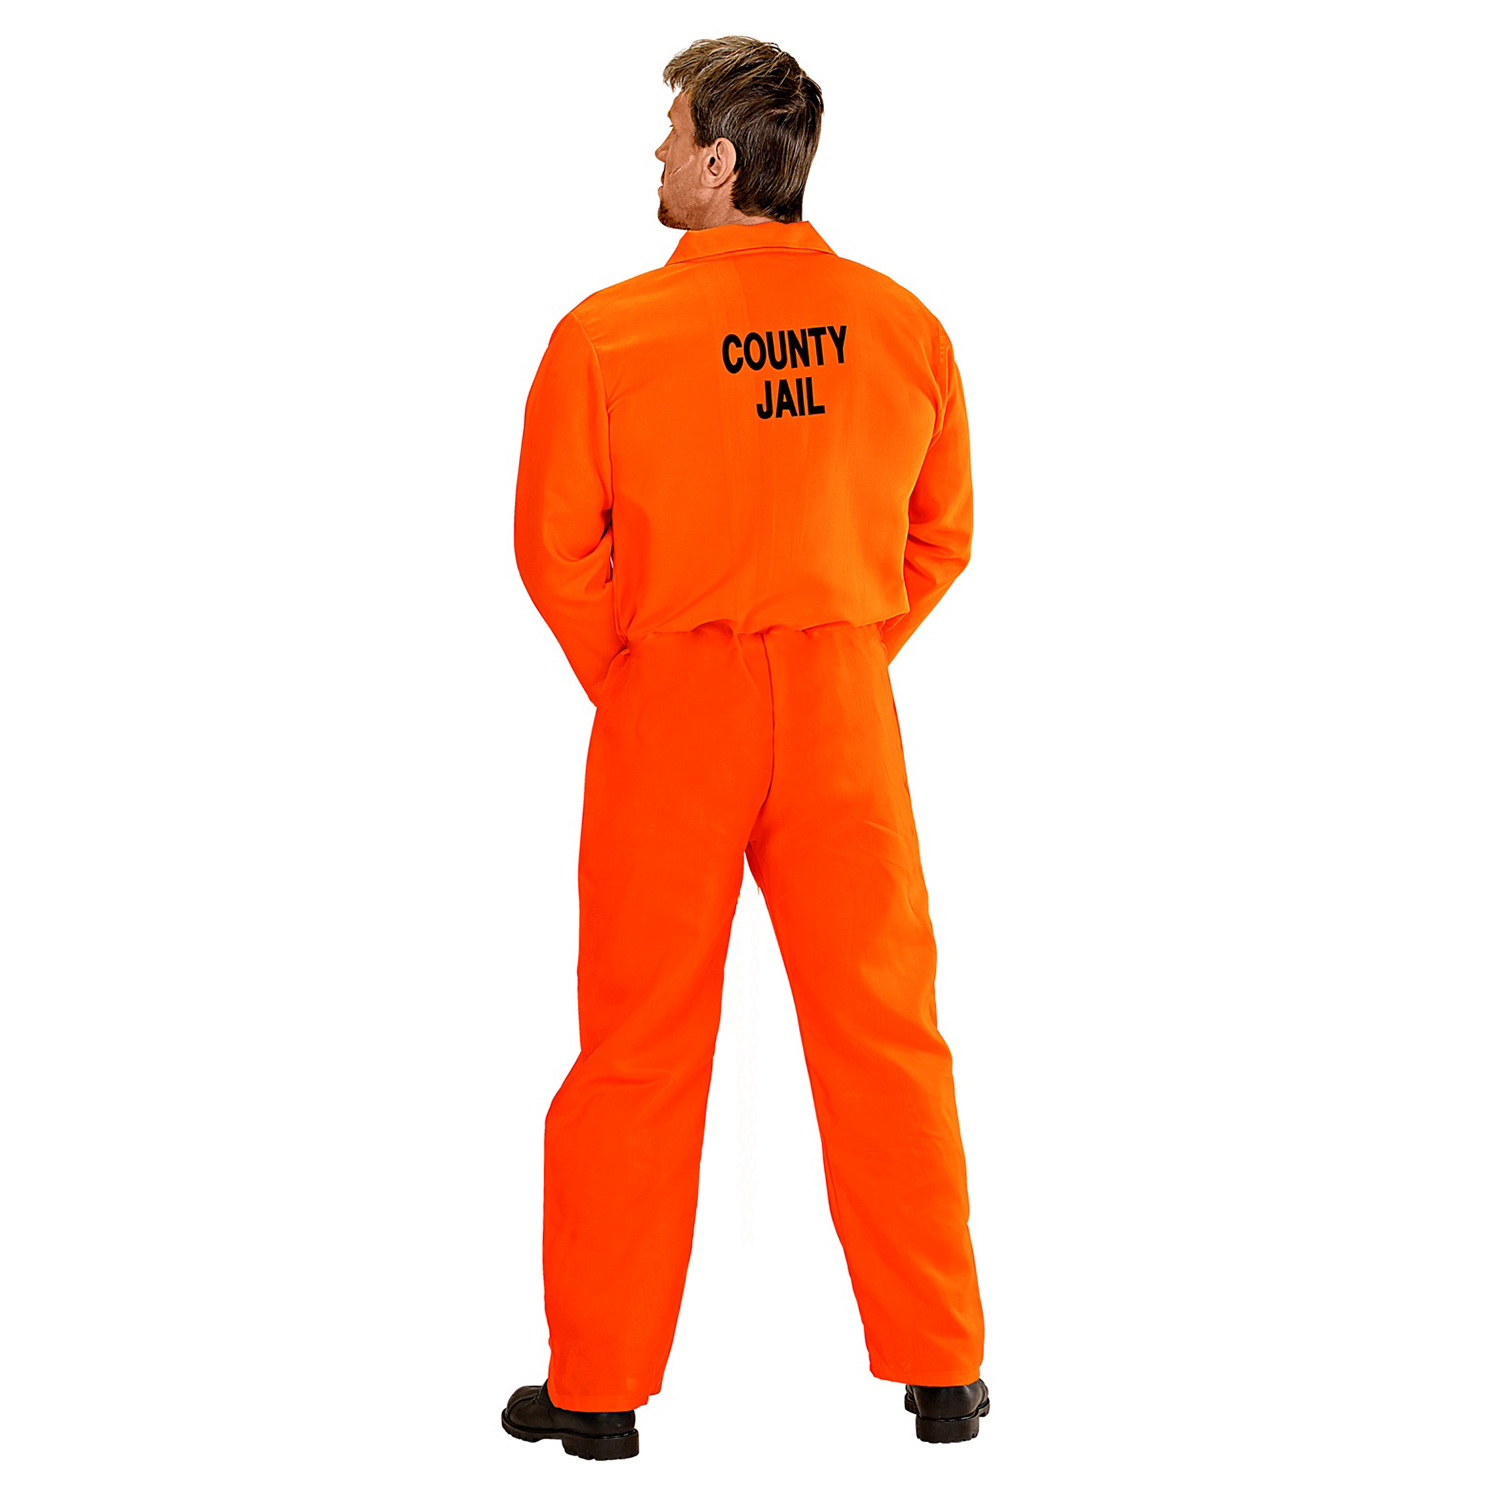 NEU Kostüm Amerikanischer Häftling / Sträfling, Overall, Orange -  verschiedene Größen (S-XXL) - Polizei, FBI & Sträfling Kostüme & Zubehör  für Erwachsene Kostüme & Verkleiden Produkte 